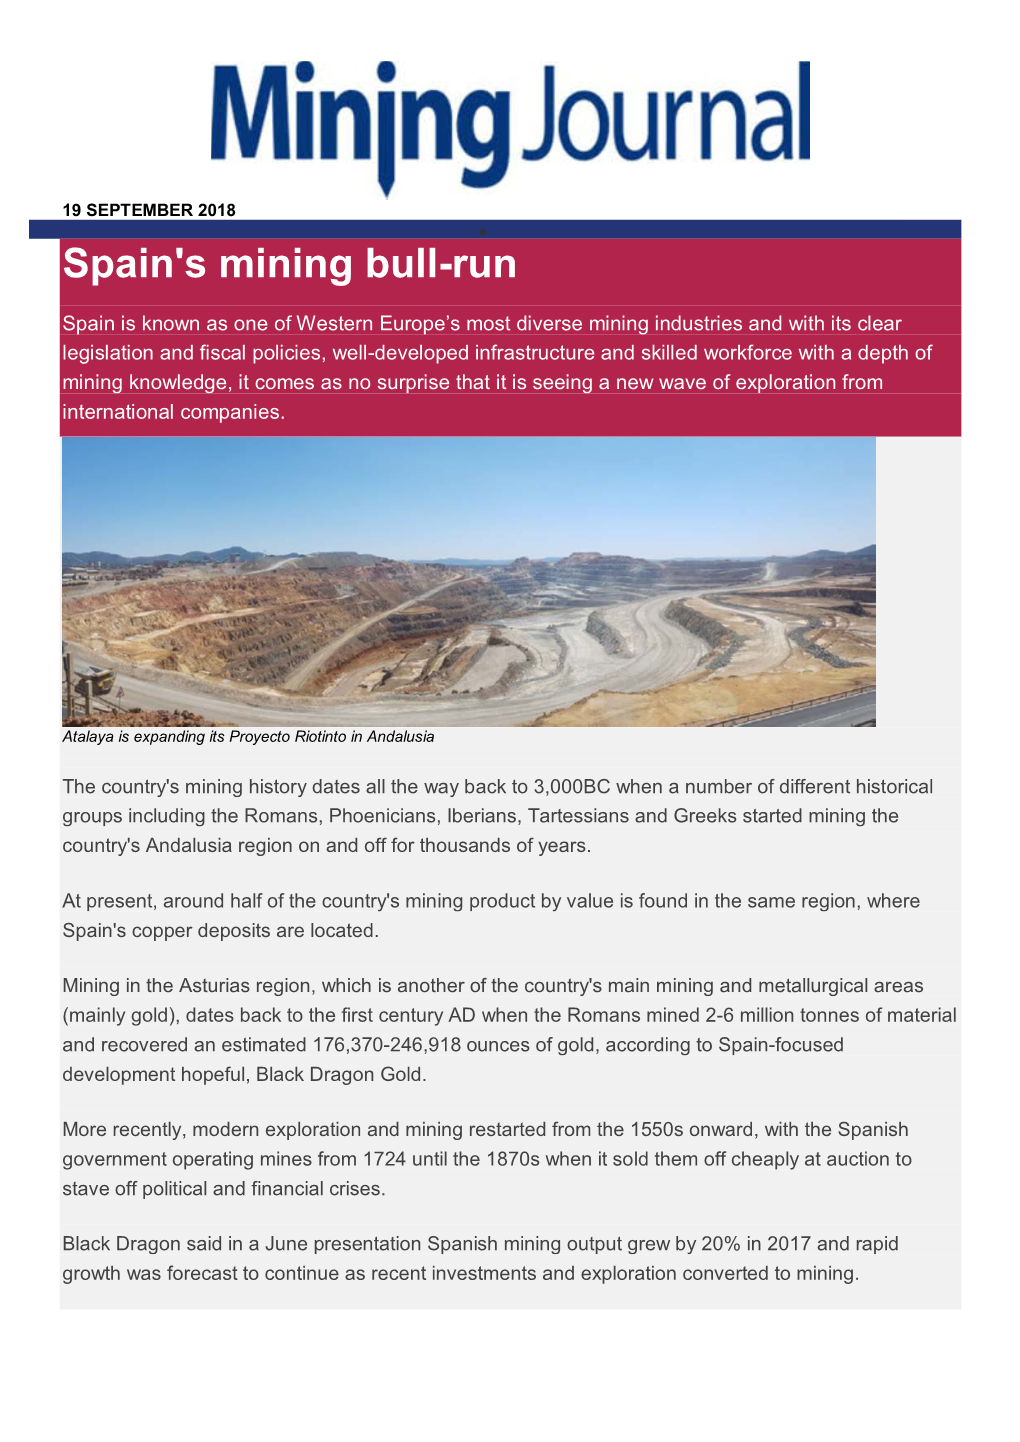 Spain's Mining Bull-Run